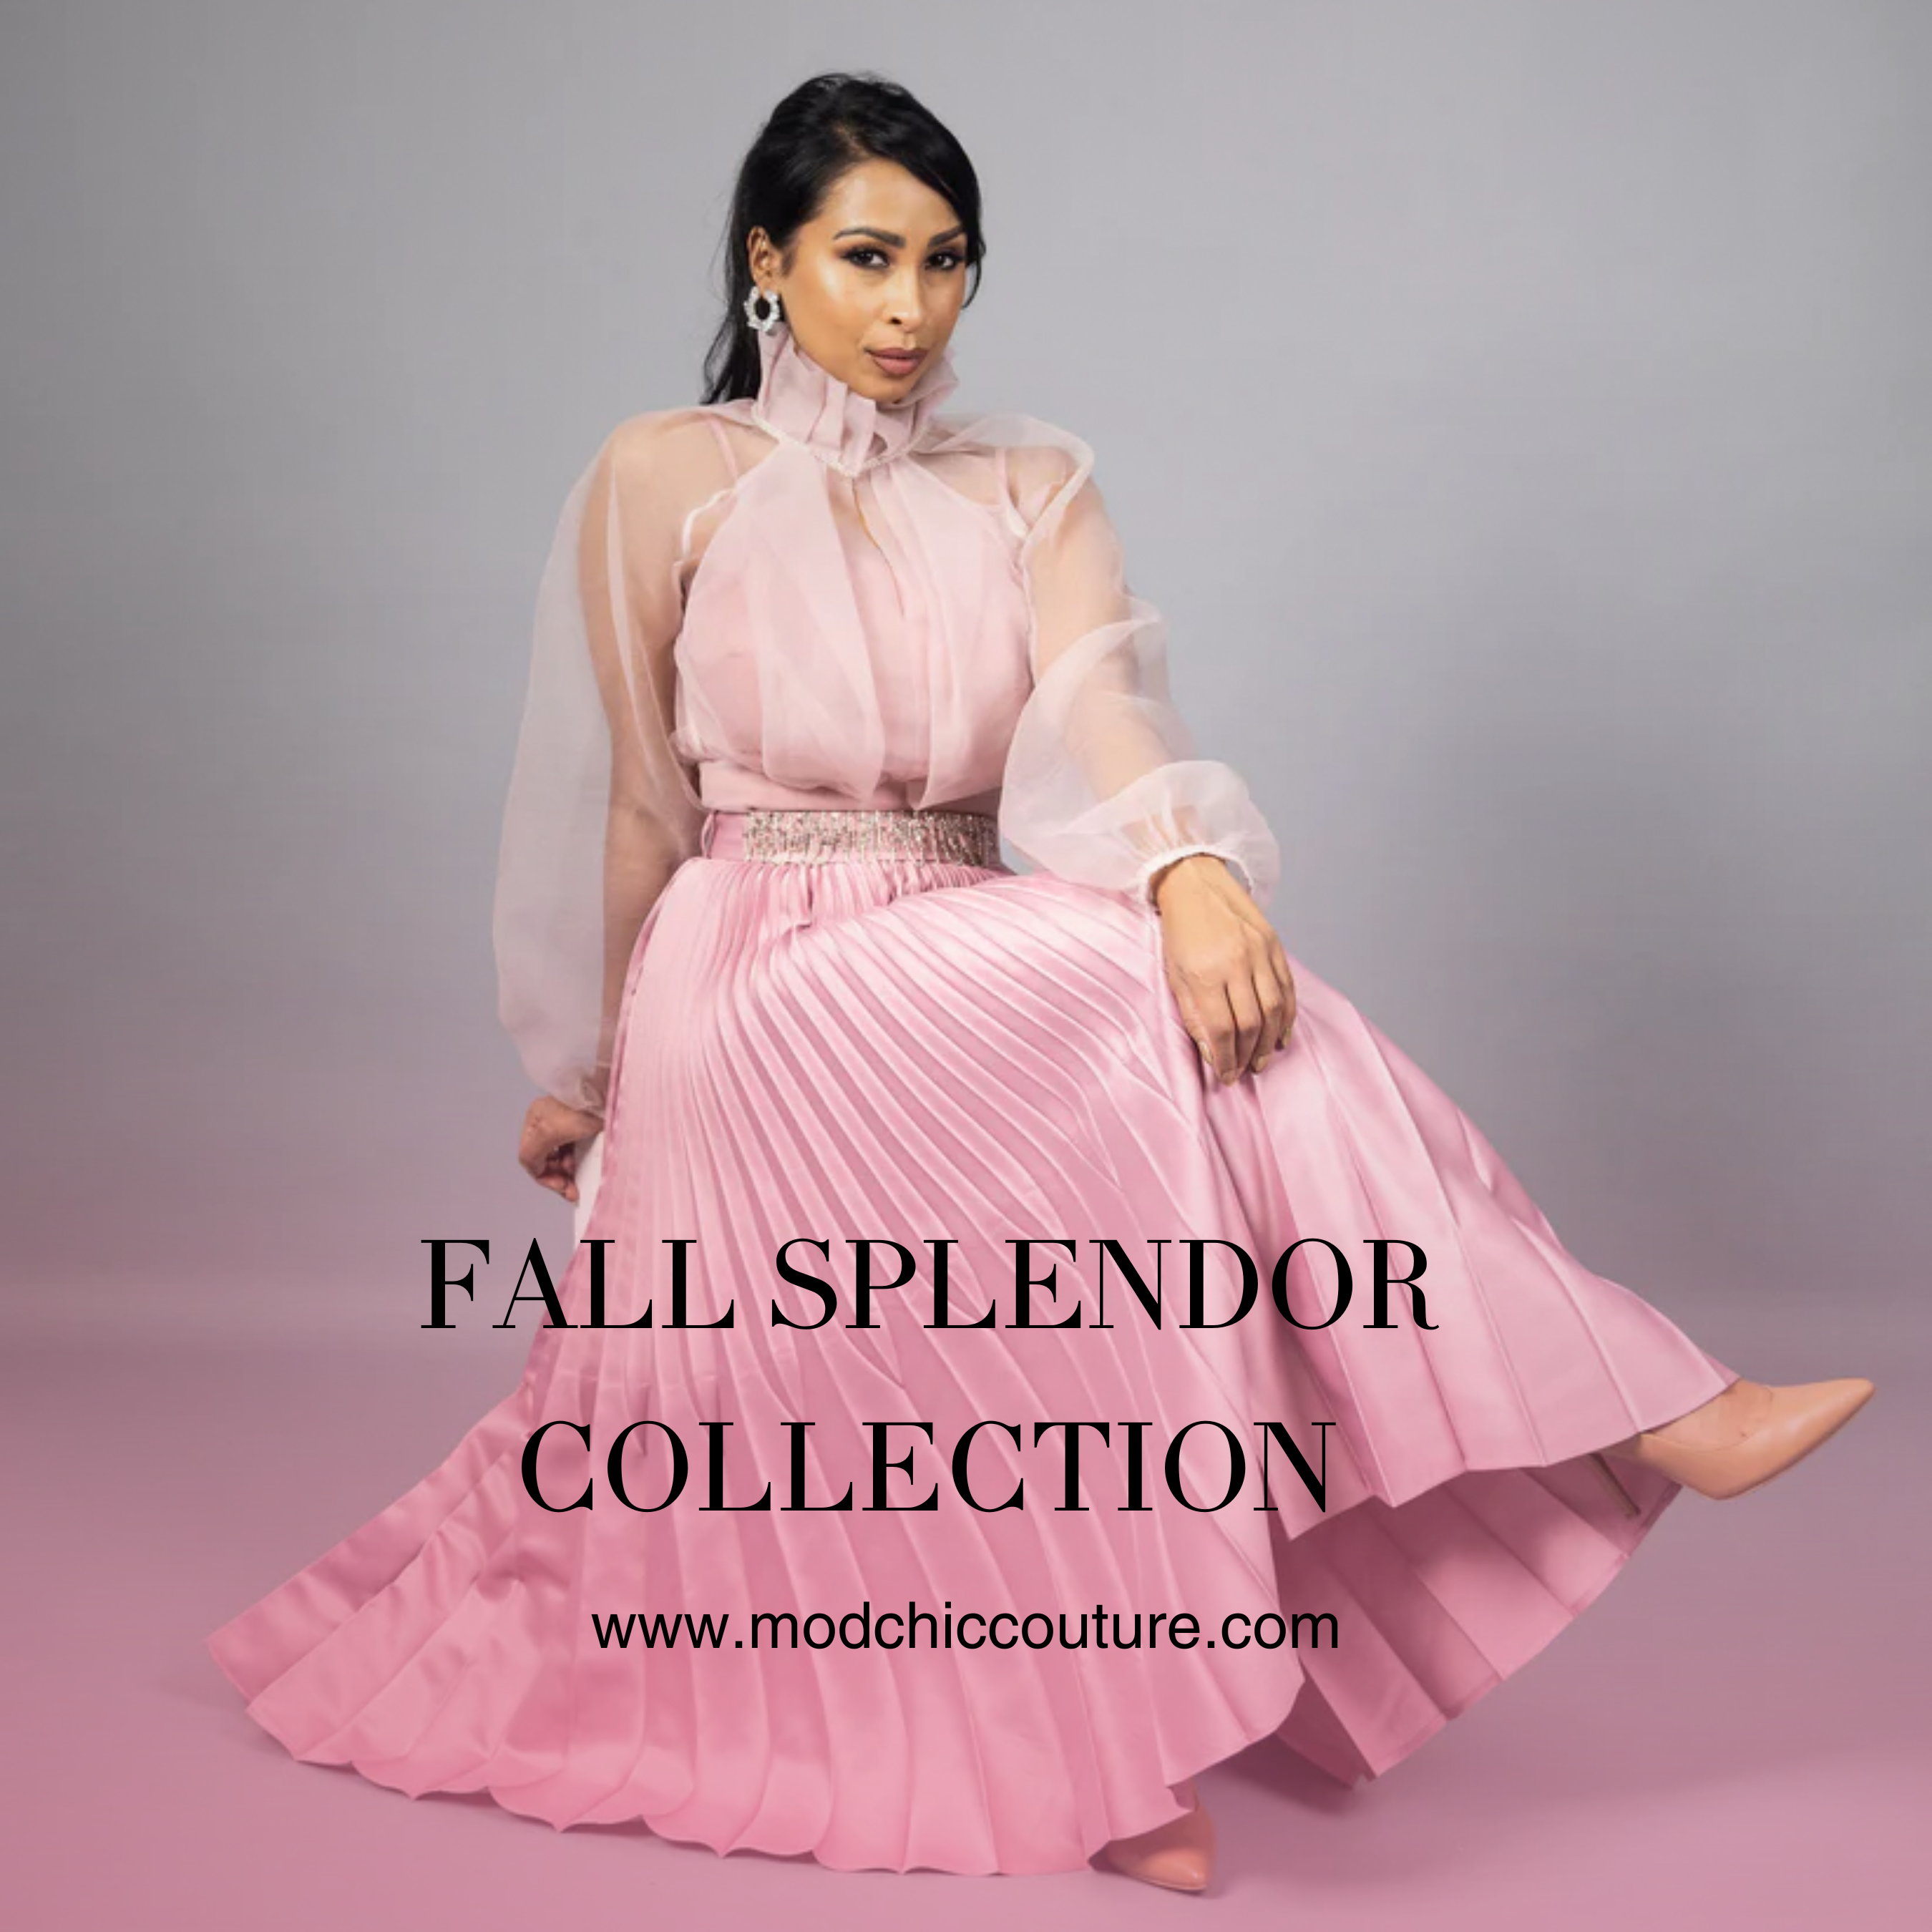 Fall Splendor Collection